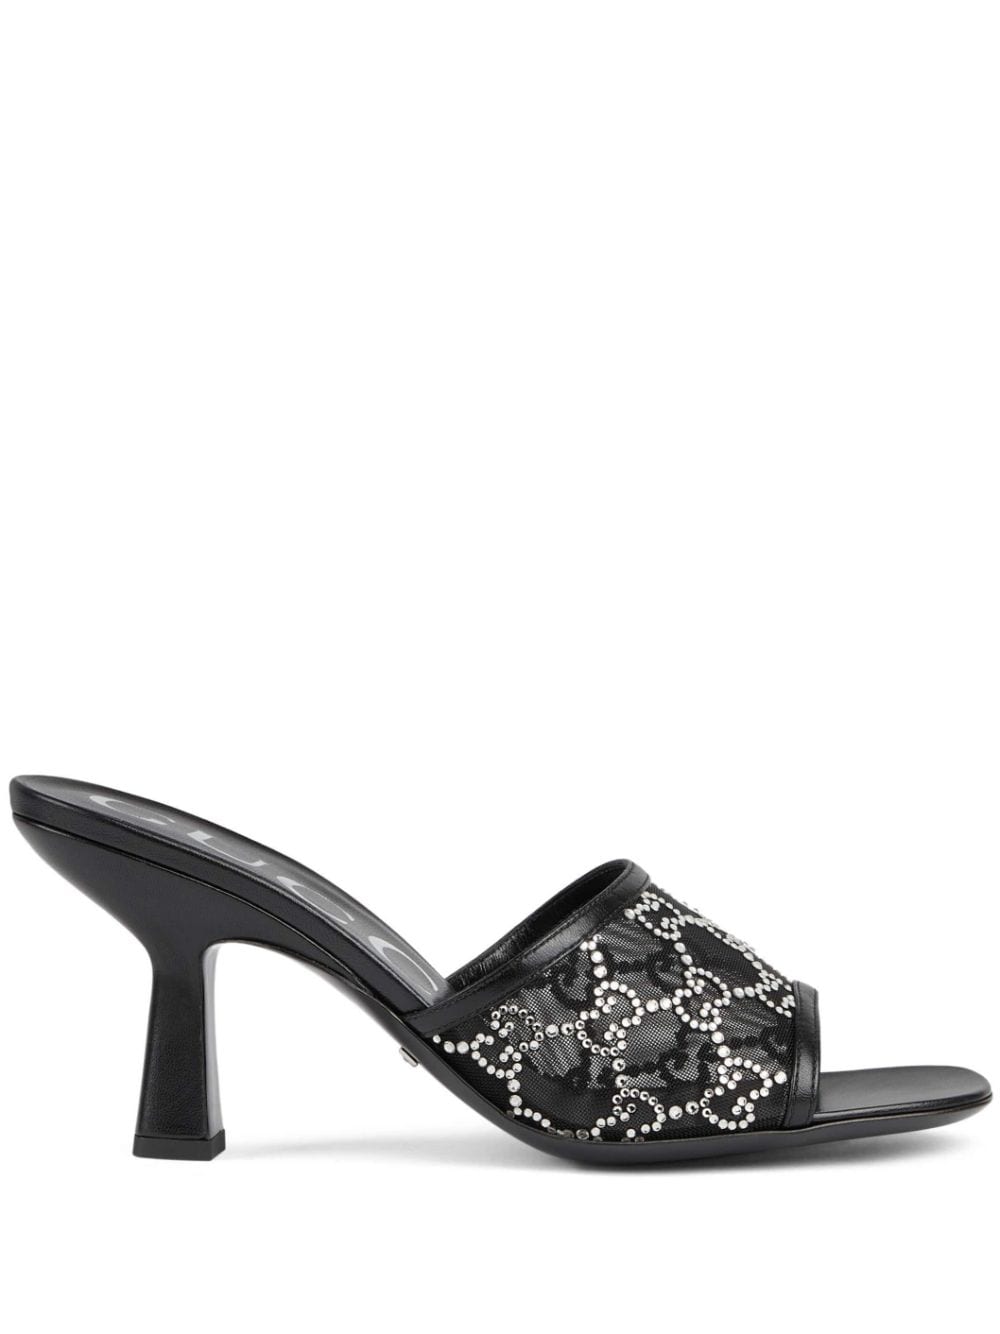 GUCCI Black Crystal-Embellished Mid-Heel Sandals for Women